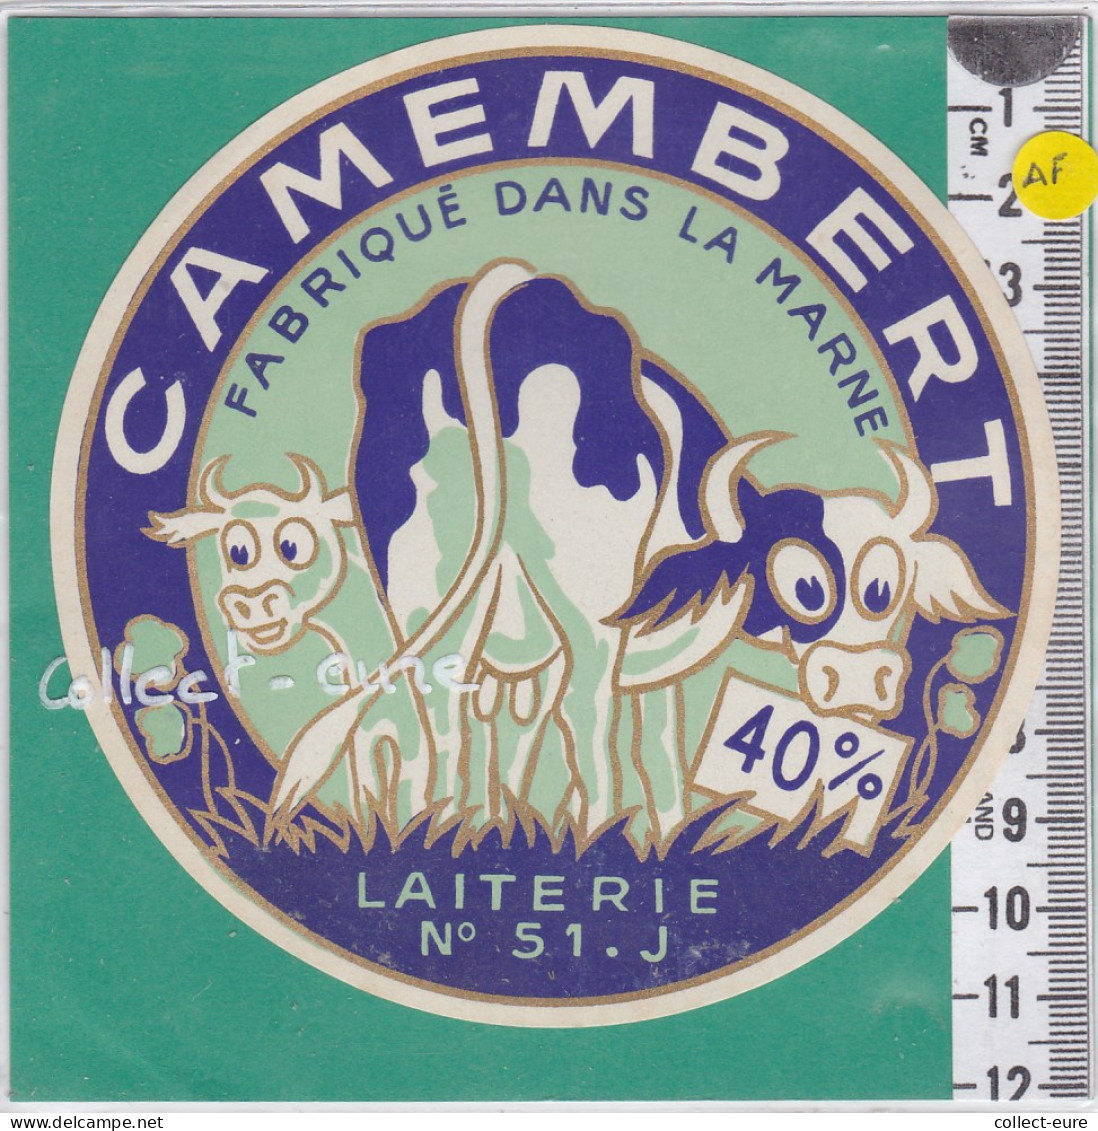 C1187 FROMAGE  CAMEMBERT  SAINT JEAN SUR MOIVRE MARNE 40 %  - Käse